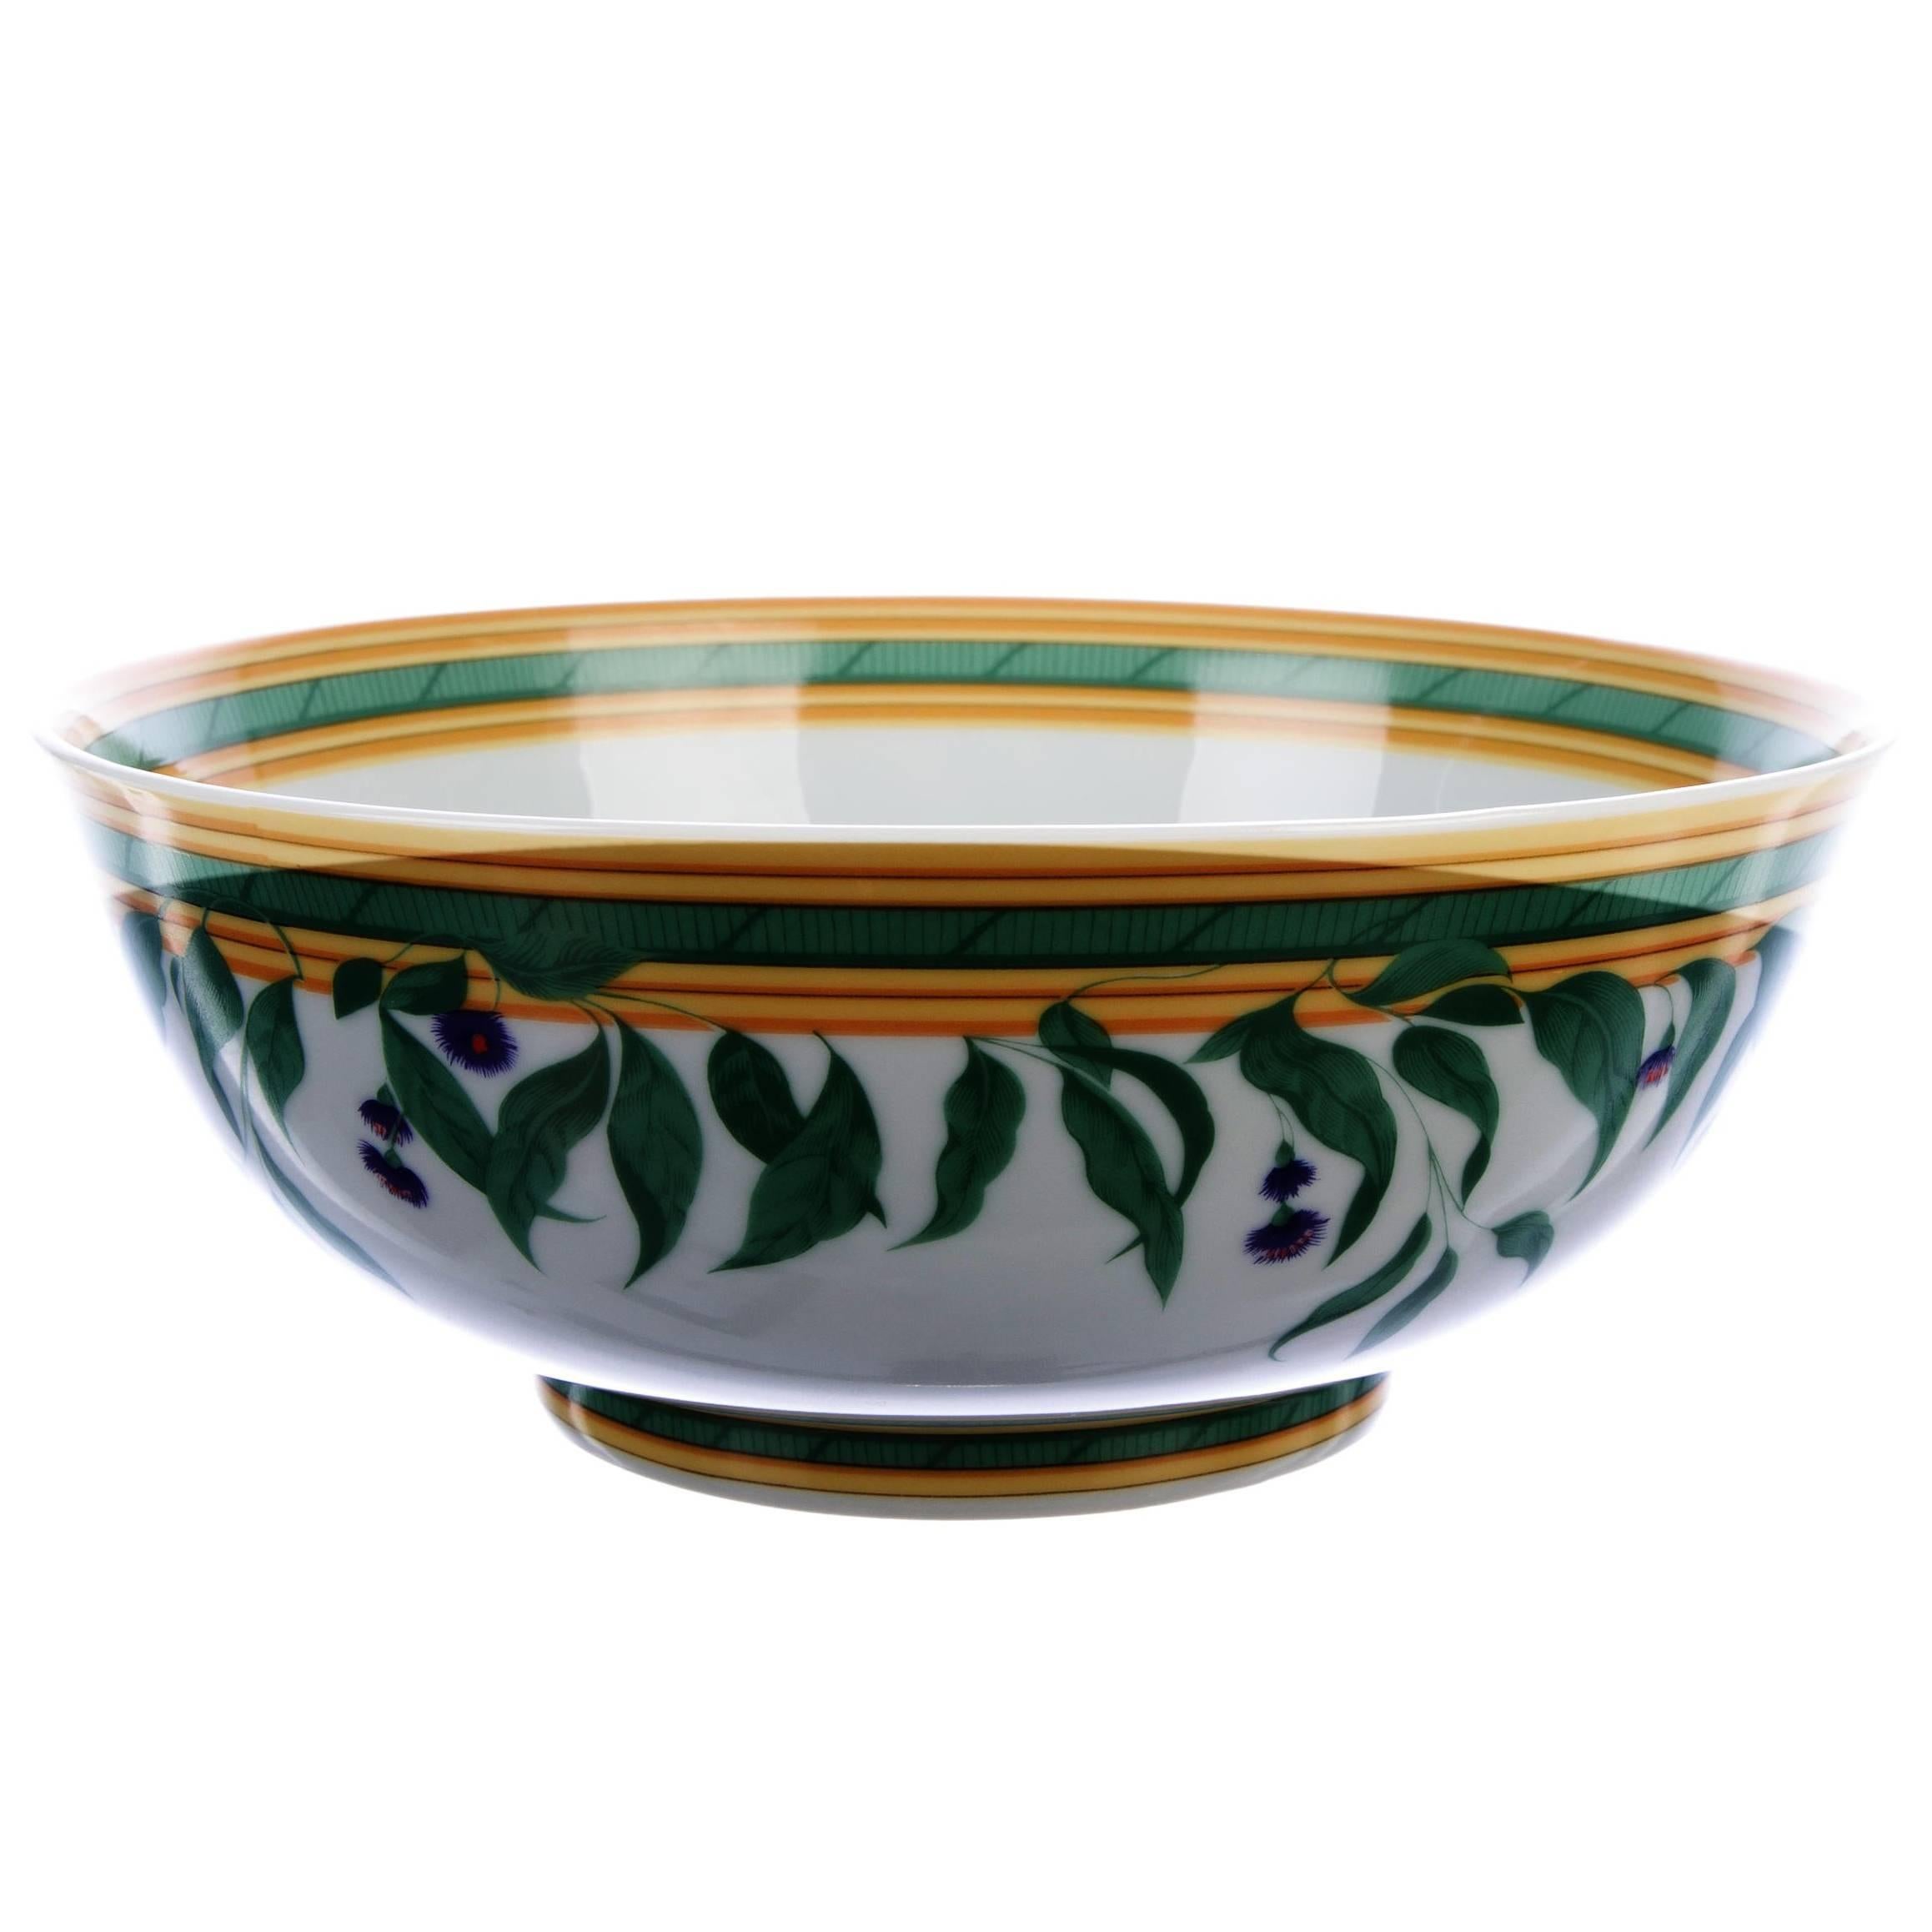 Hermes Porcelain White Multi Color Bowl Centerpiece Table Home Decorative